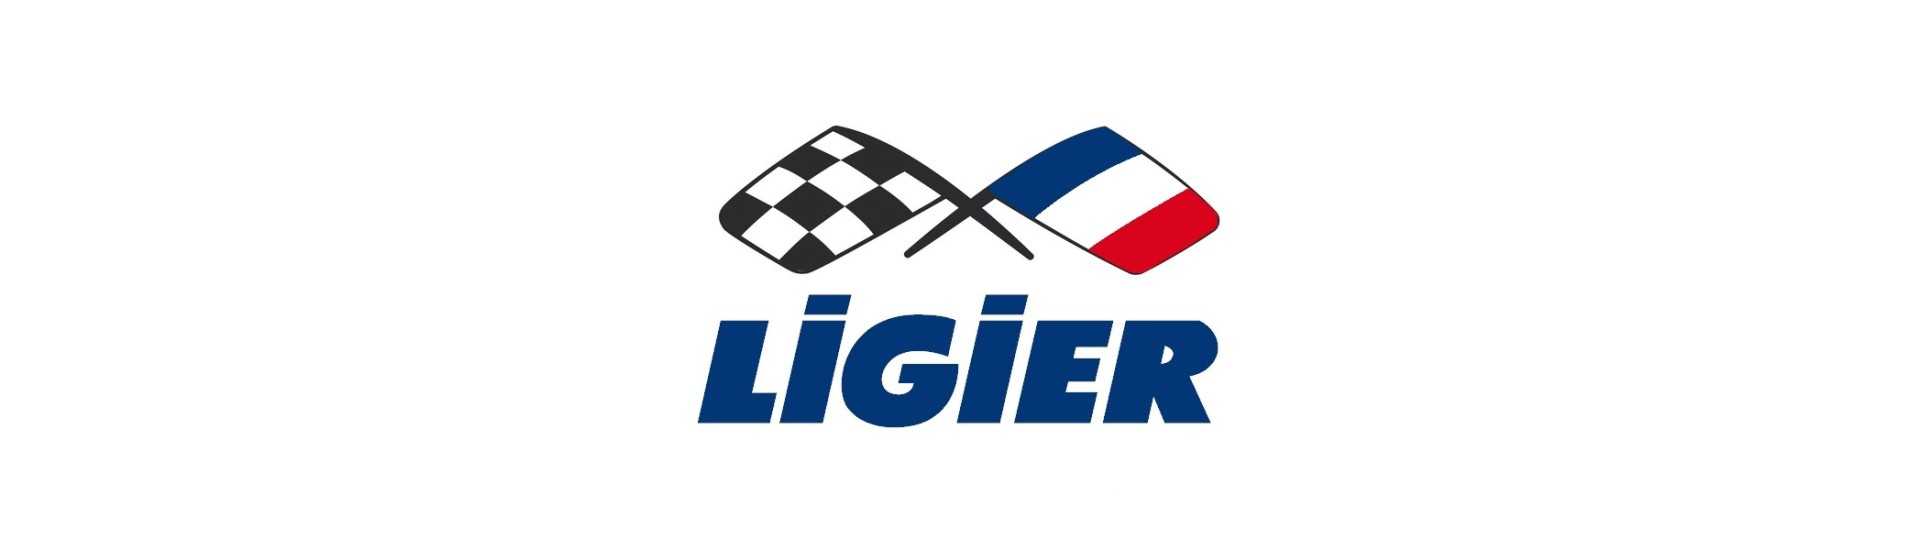 Anti dimma till bästa pris för bil utan tillstånd Ligier